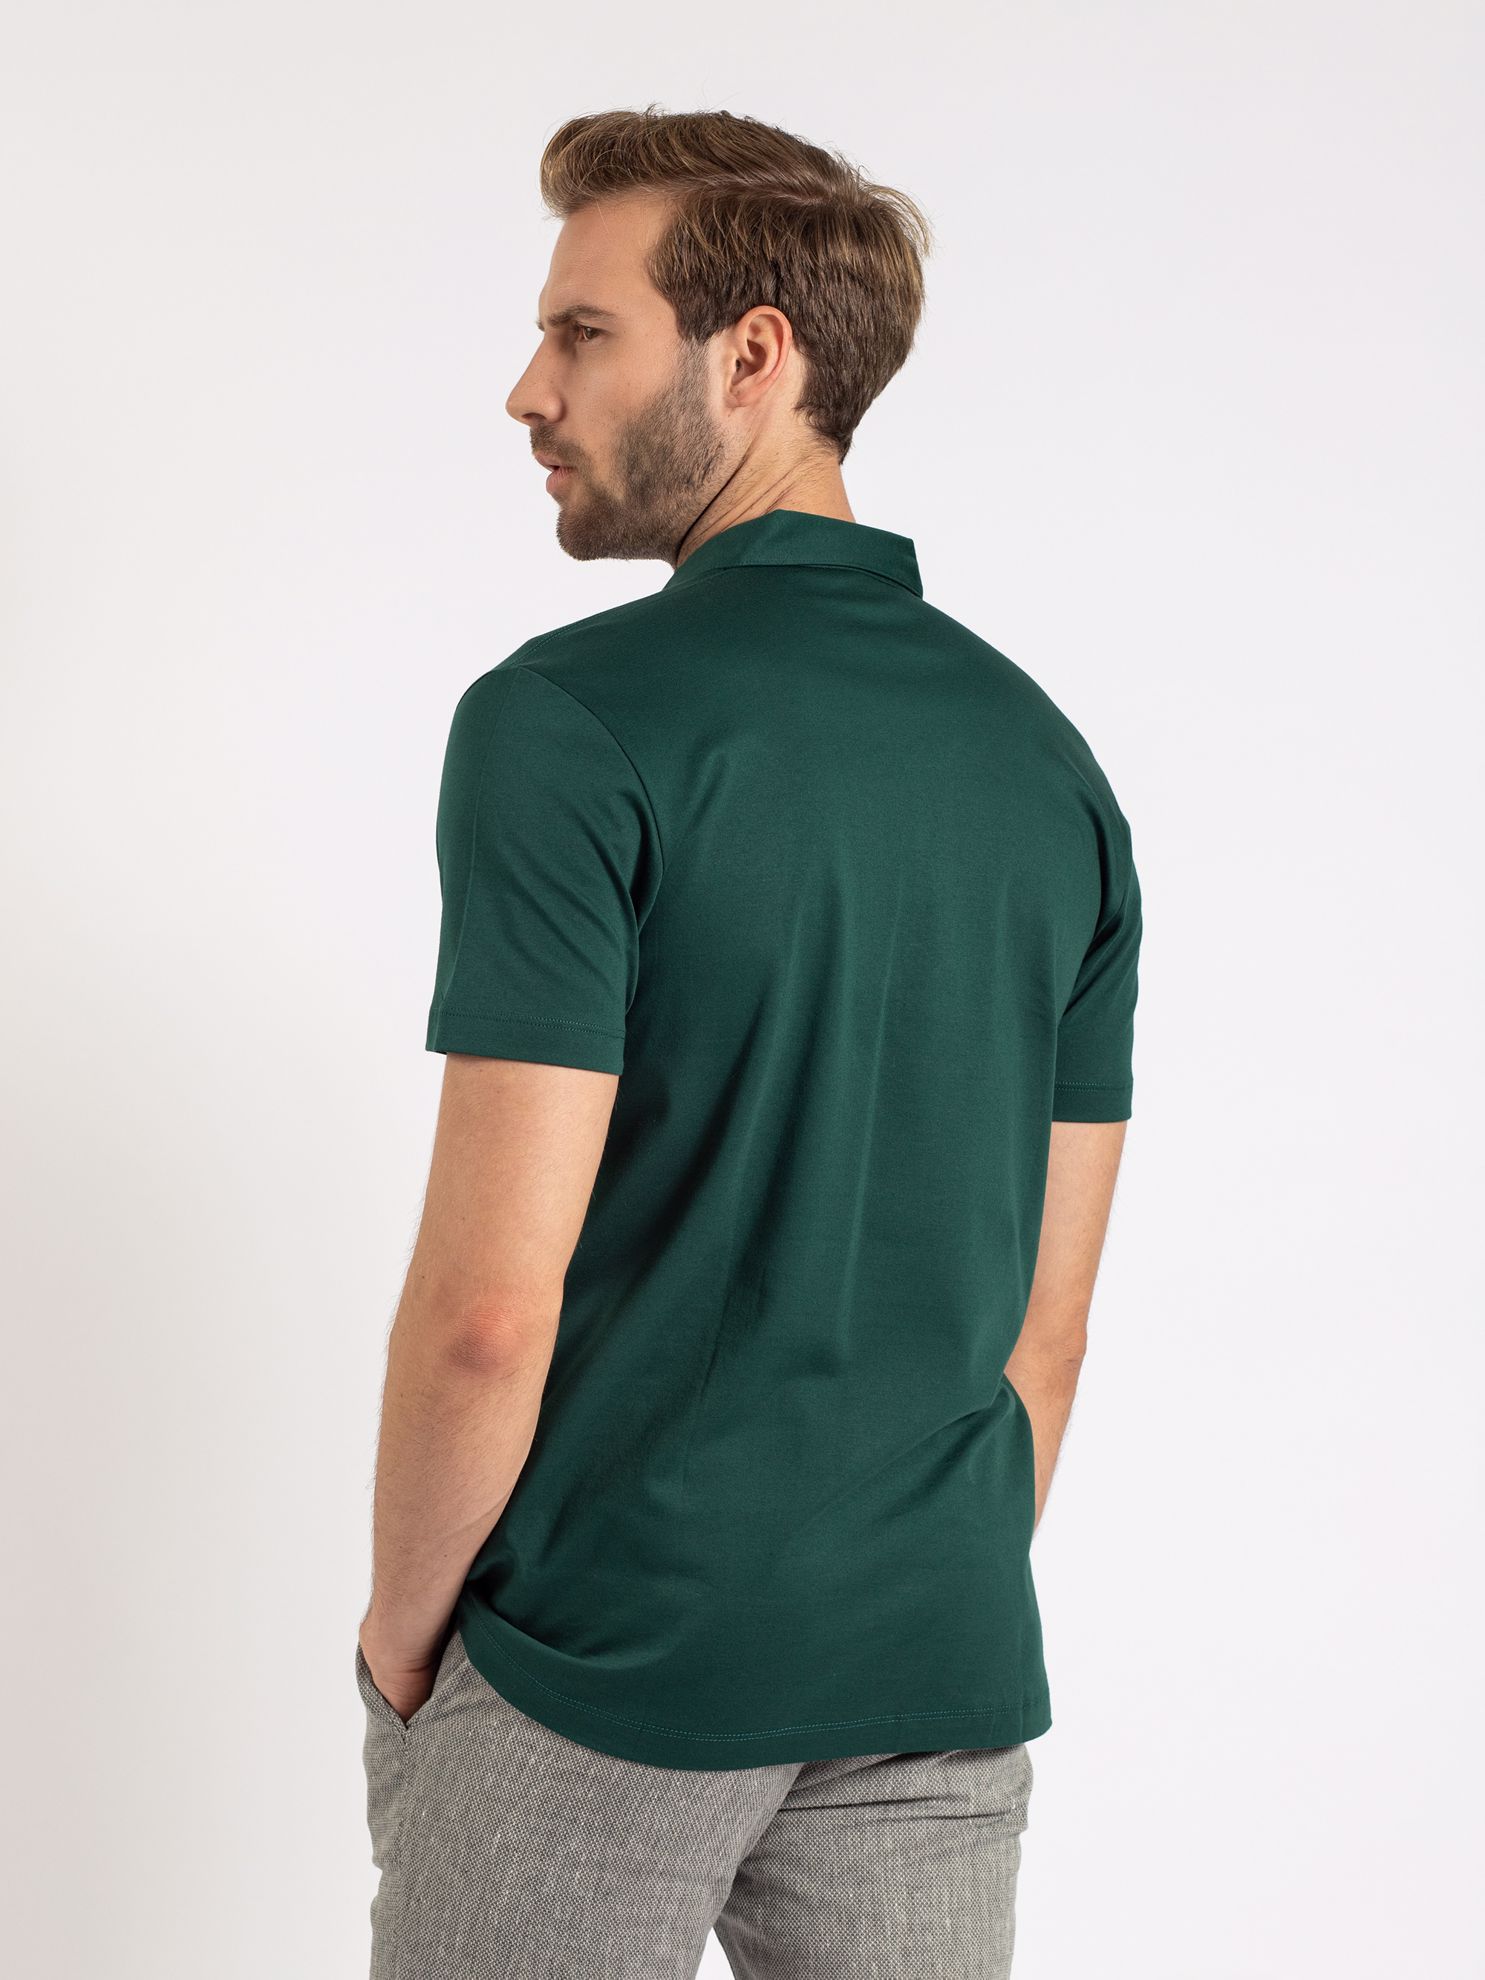 Karaca Erkek Slim Fit Polo Yaka Tişört-Koyu Yeşil. ürün görseli